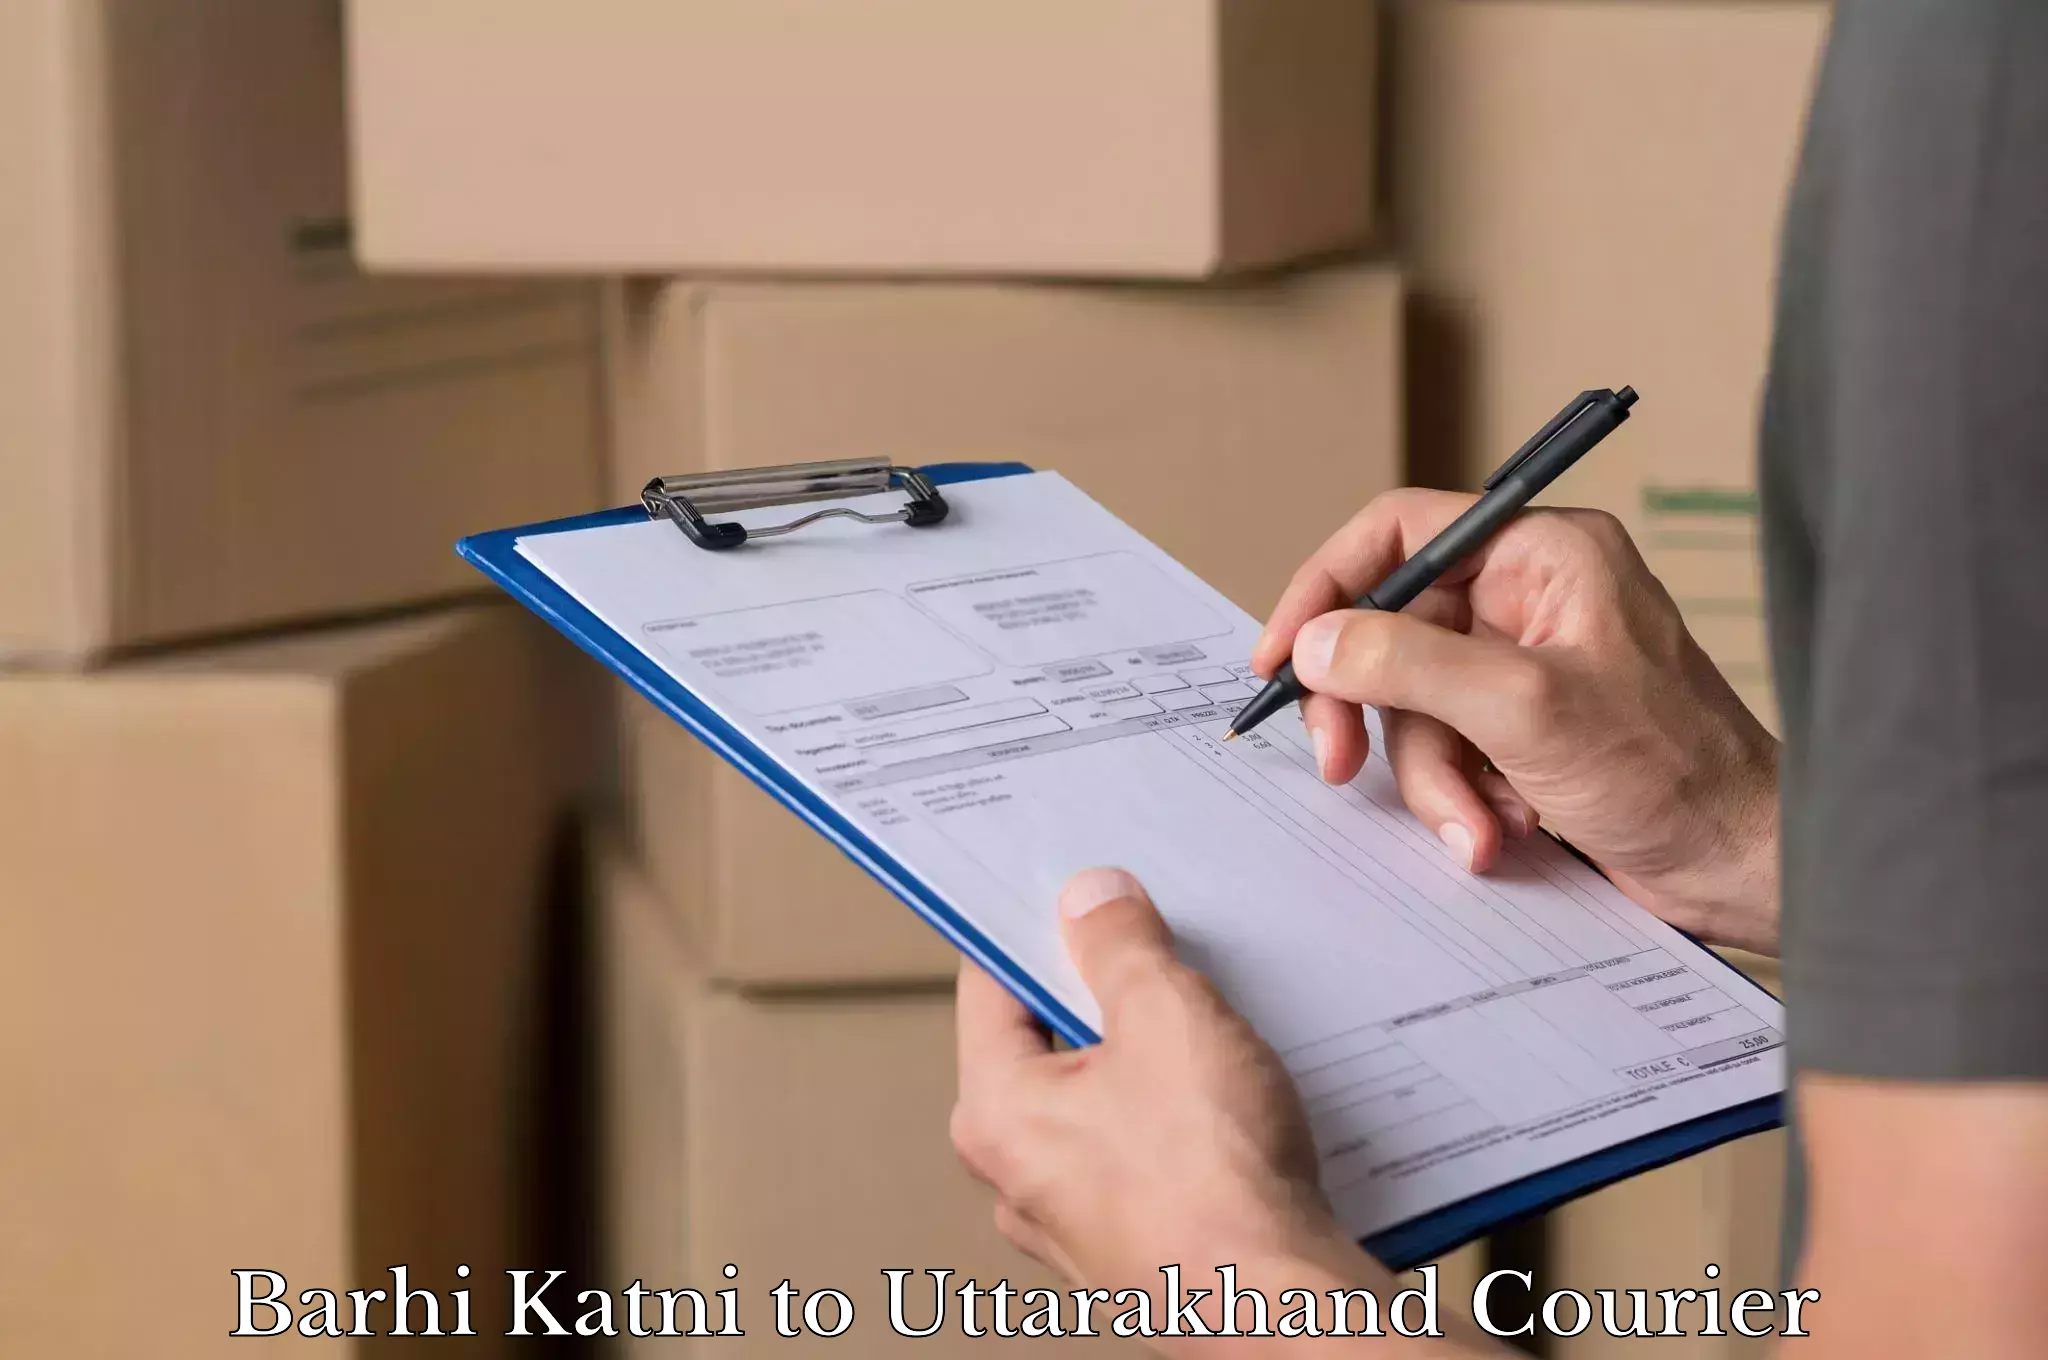 Baggage shipping quotes Barhi Katni to Uttarakhand